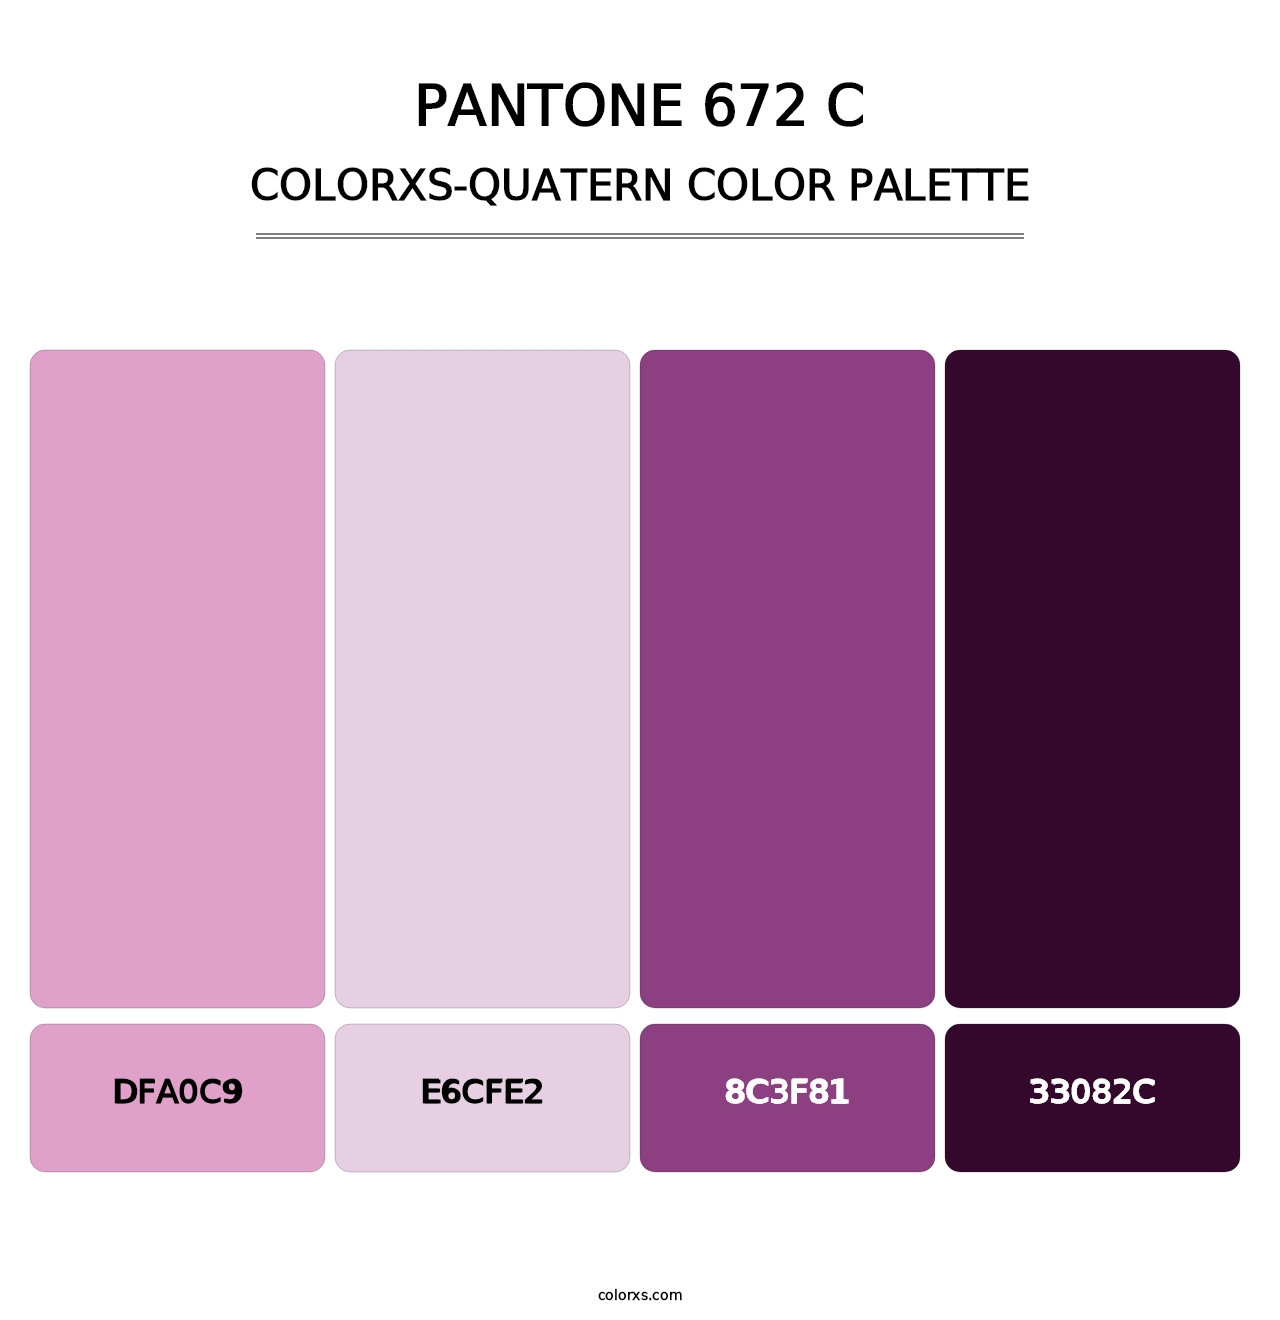 PANTONE 672 C - Colorxs Quatern Palette